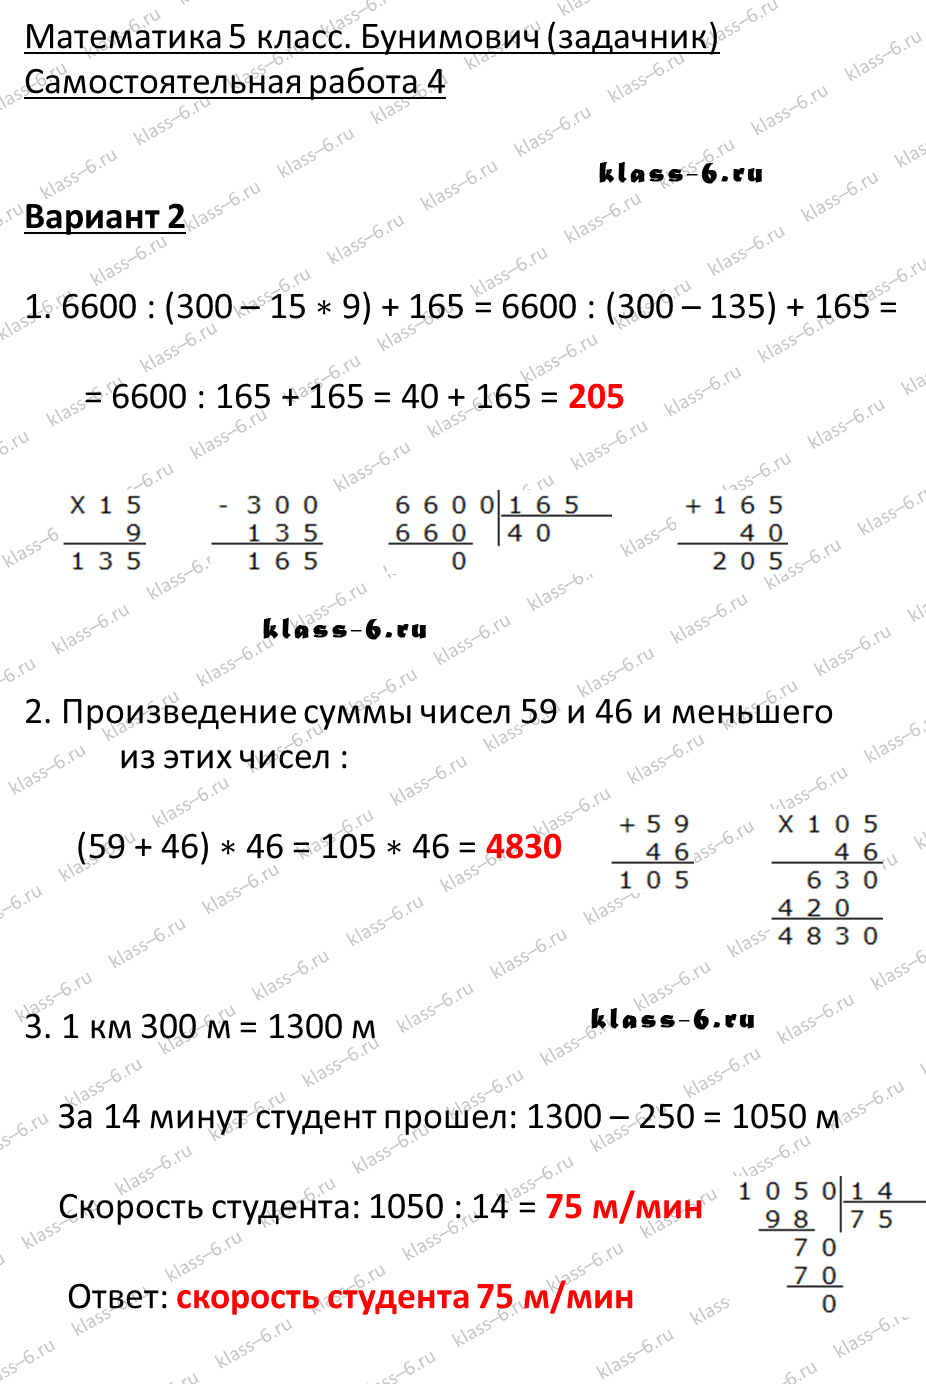 решебник и гдз по математике задачник Бунимович 5 класс самостоятельная работа 4-v2